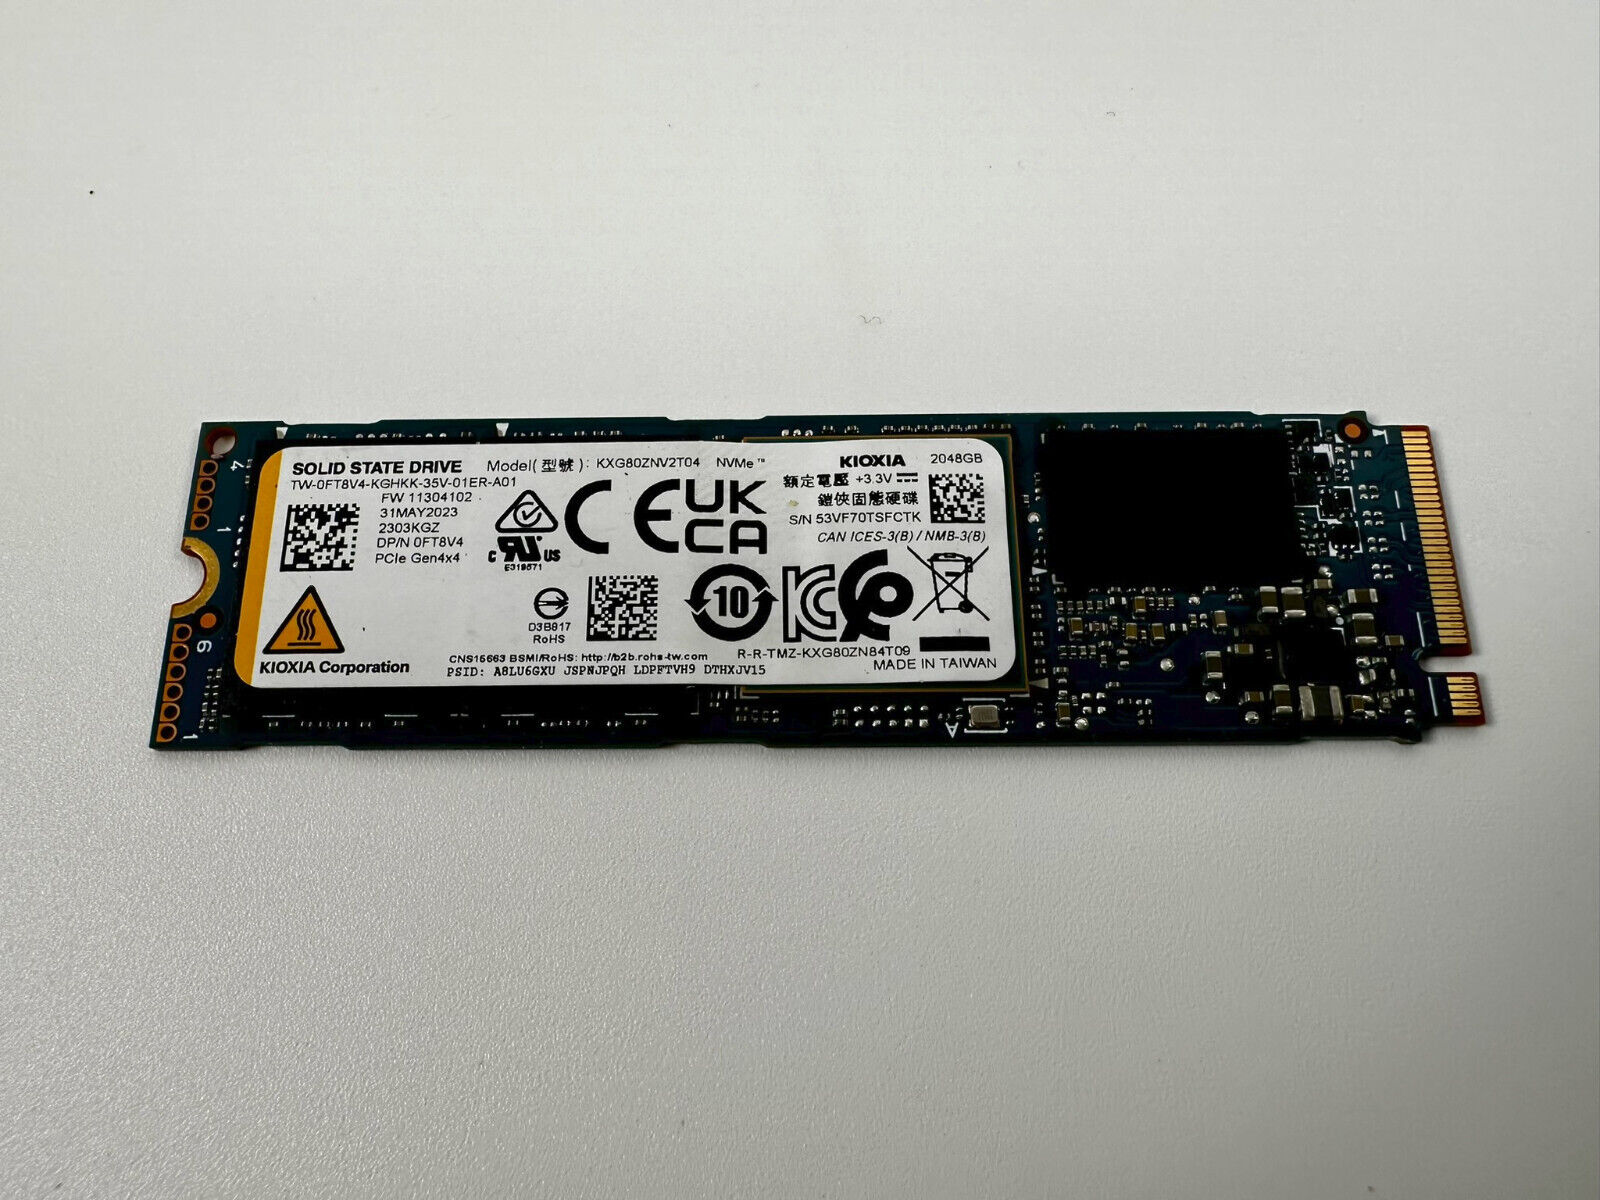 2TB Kioxia XG8 M.2 2280 PCIe 4.0 x4 NVMe internal SSD - KXG80ZNV2T04 - HP N12389